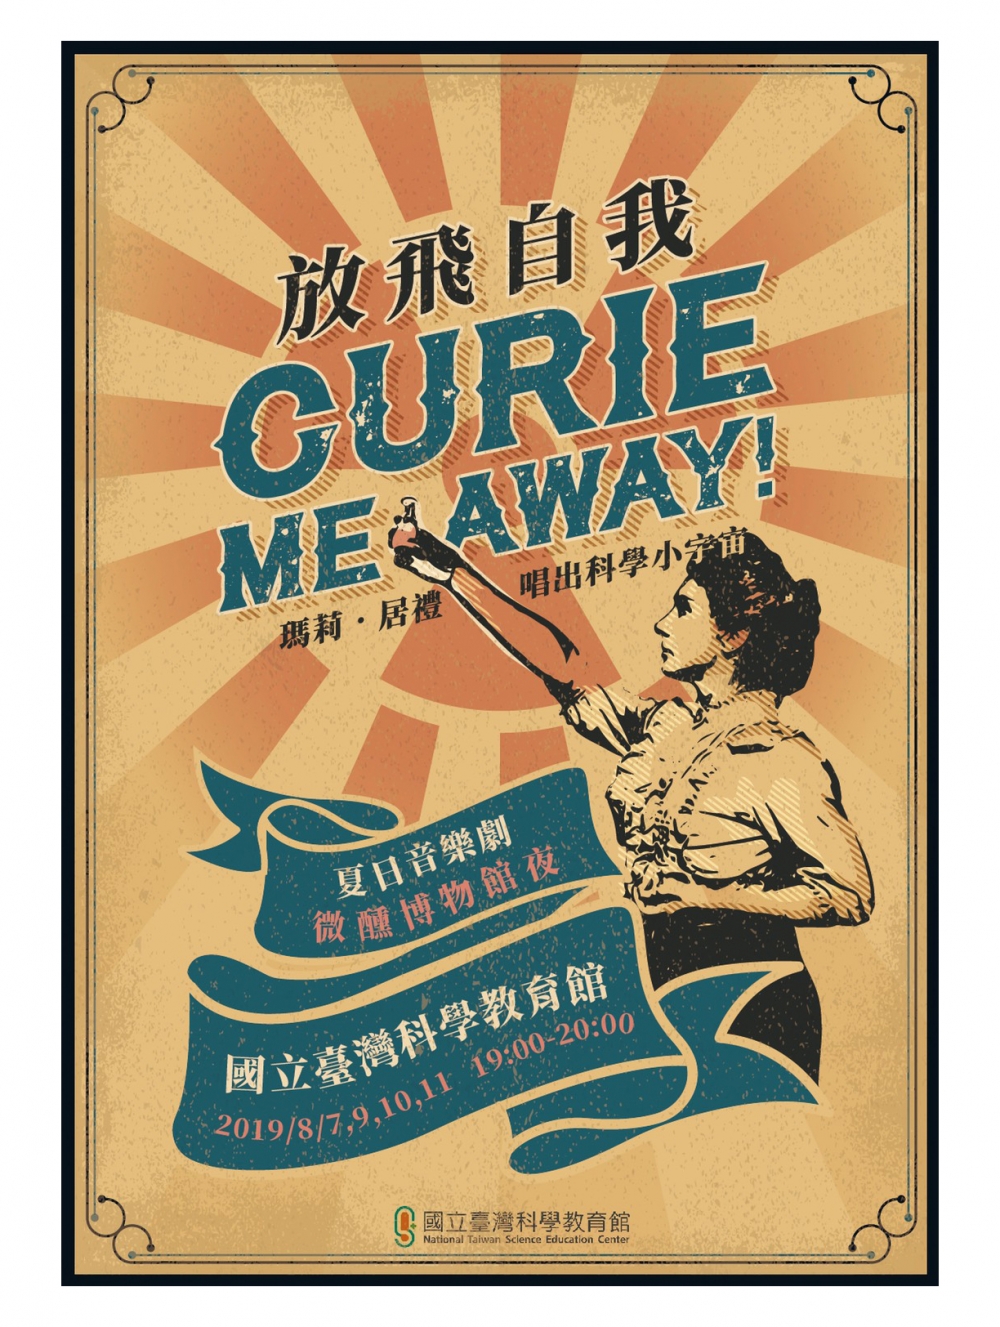 科教館-首波科學音樂劇 8月要你 放飛自我 Curie Me Away! 即日起開賣啦